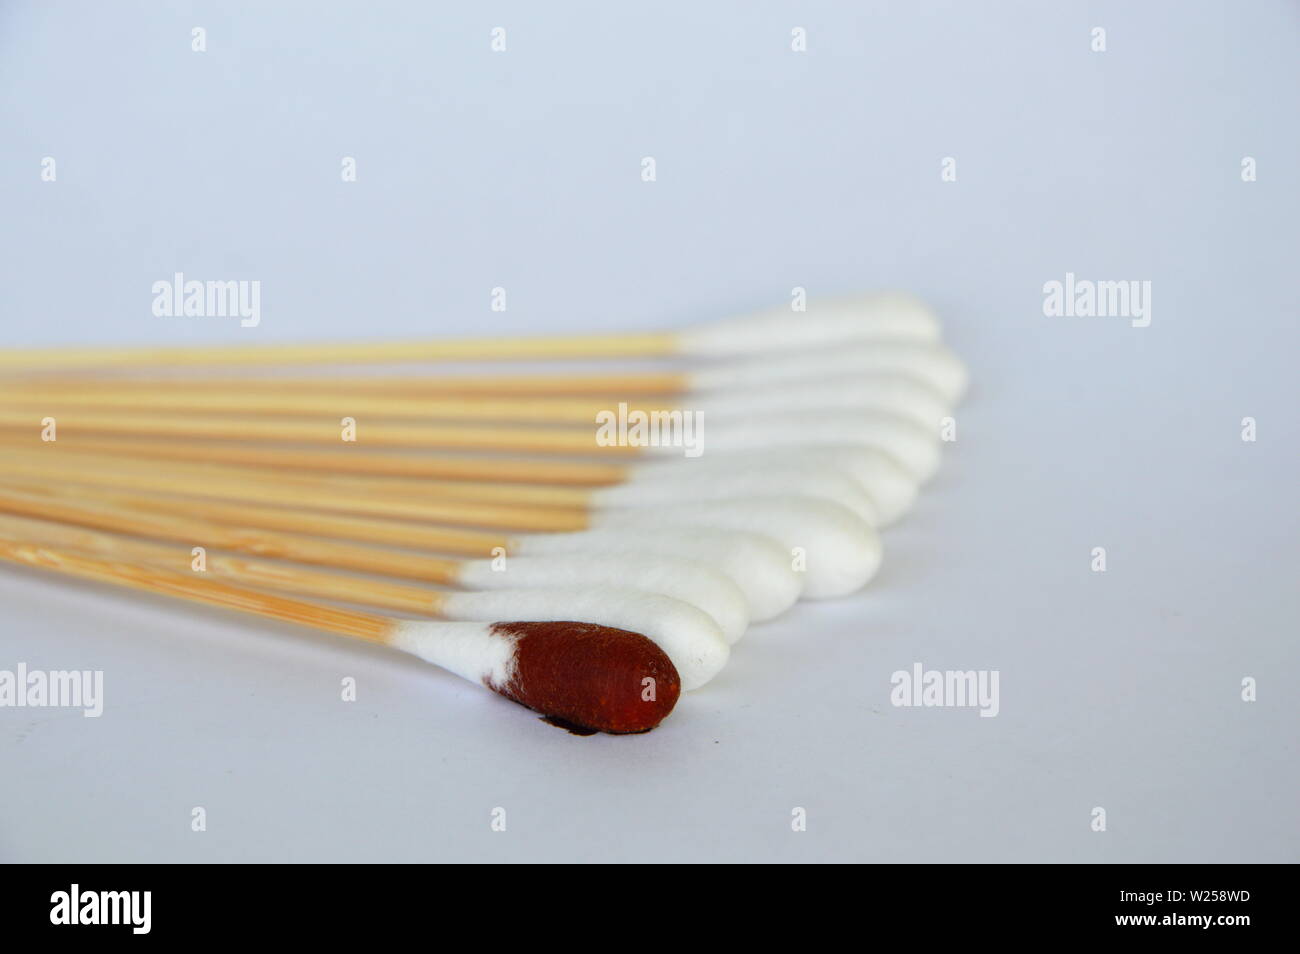 Coton-tige avec de l'iode solution sur fond blanc Photo Stock - Alamy